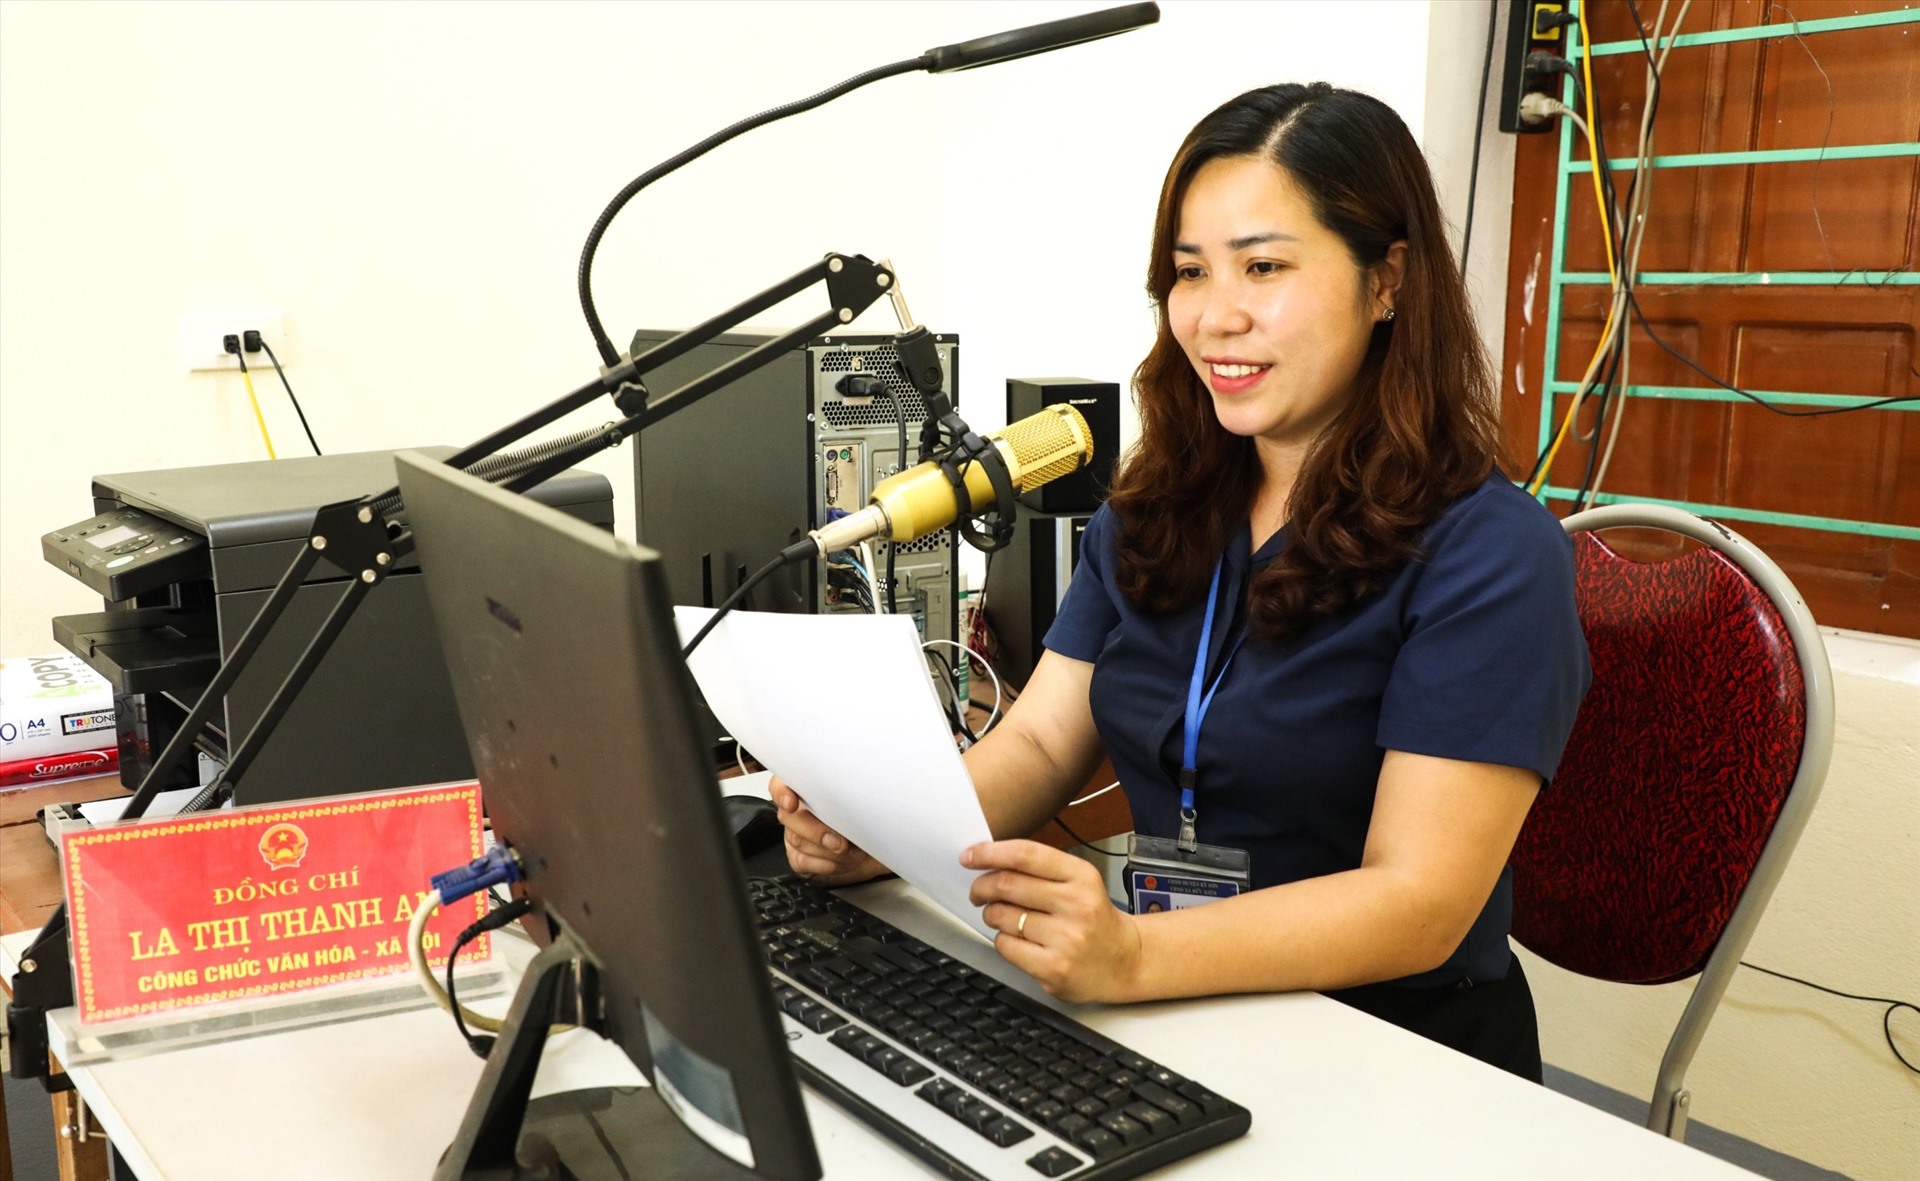 Chuyển đổi số giúp tăng hiệu quả tuyên truyền của các Đài truyền thanh cơ sở tại huyện Kỳ Sơn. Ảnh Hồng Sơn